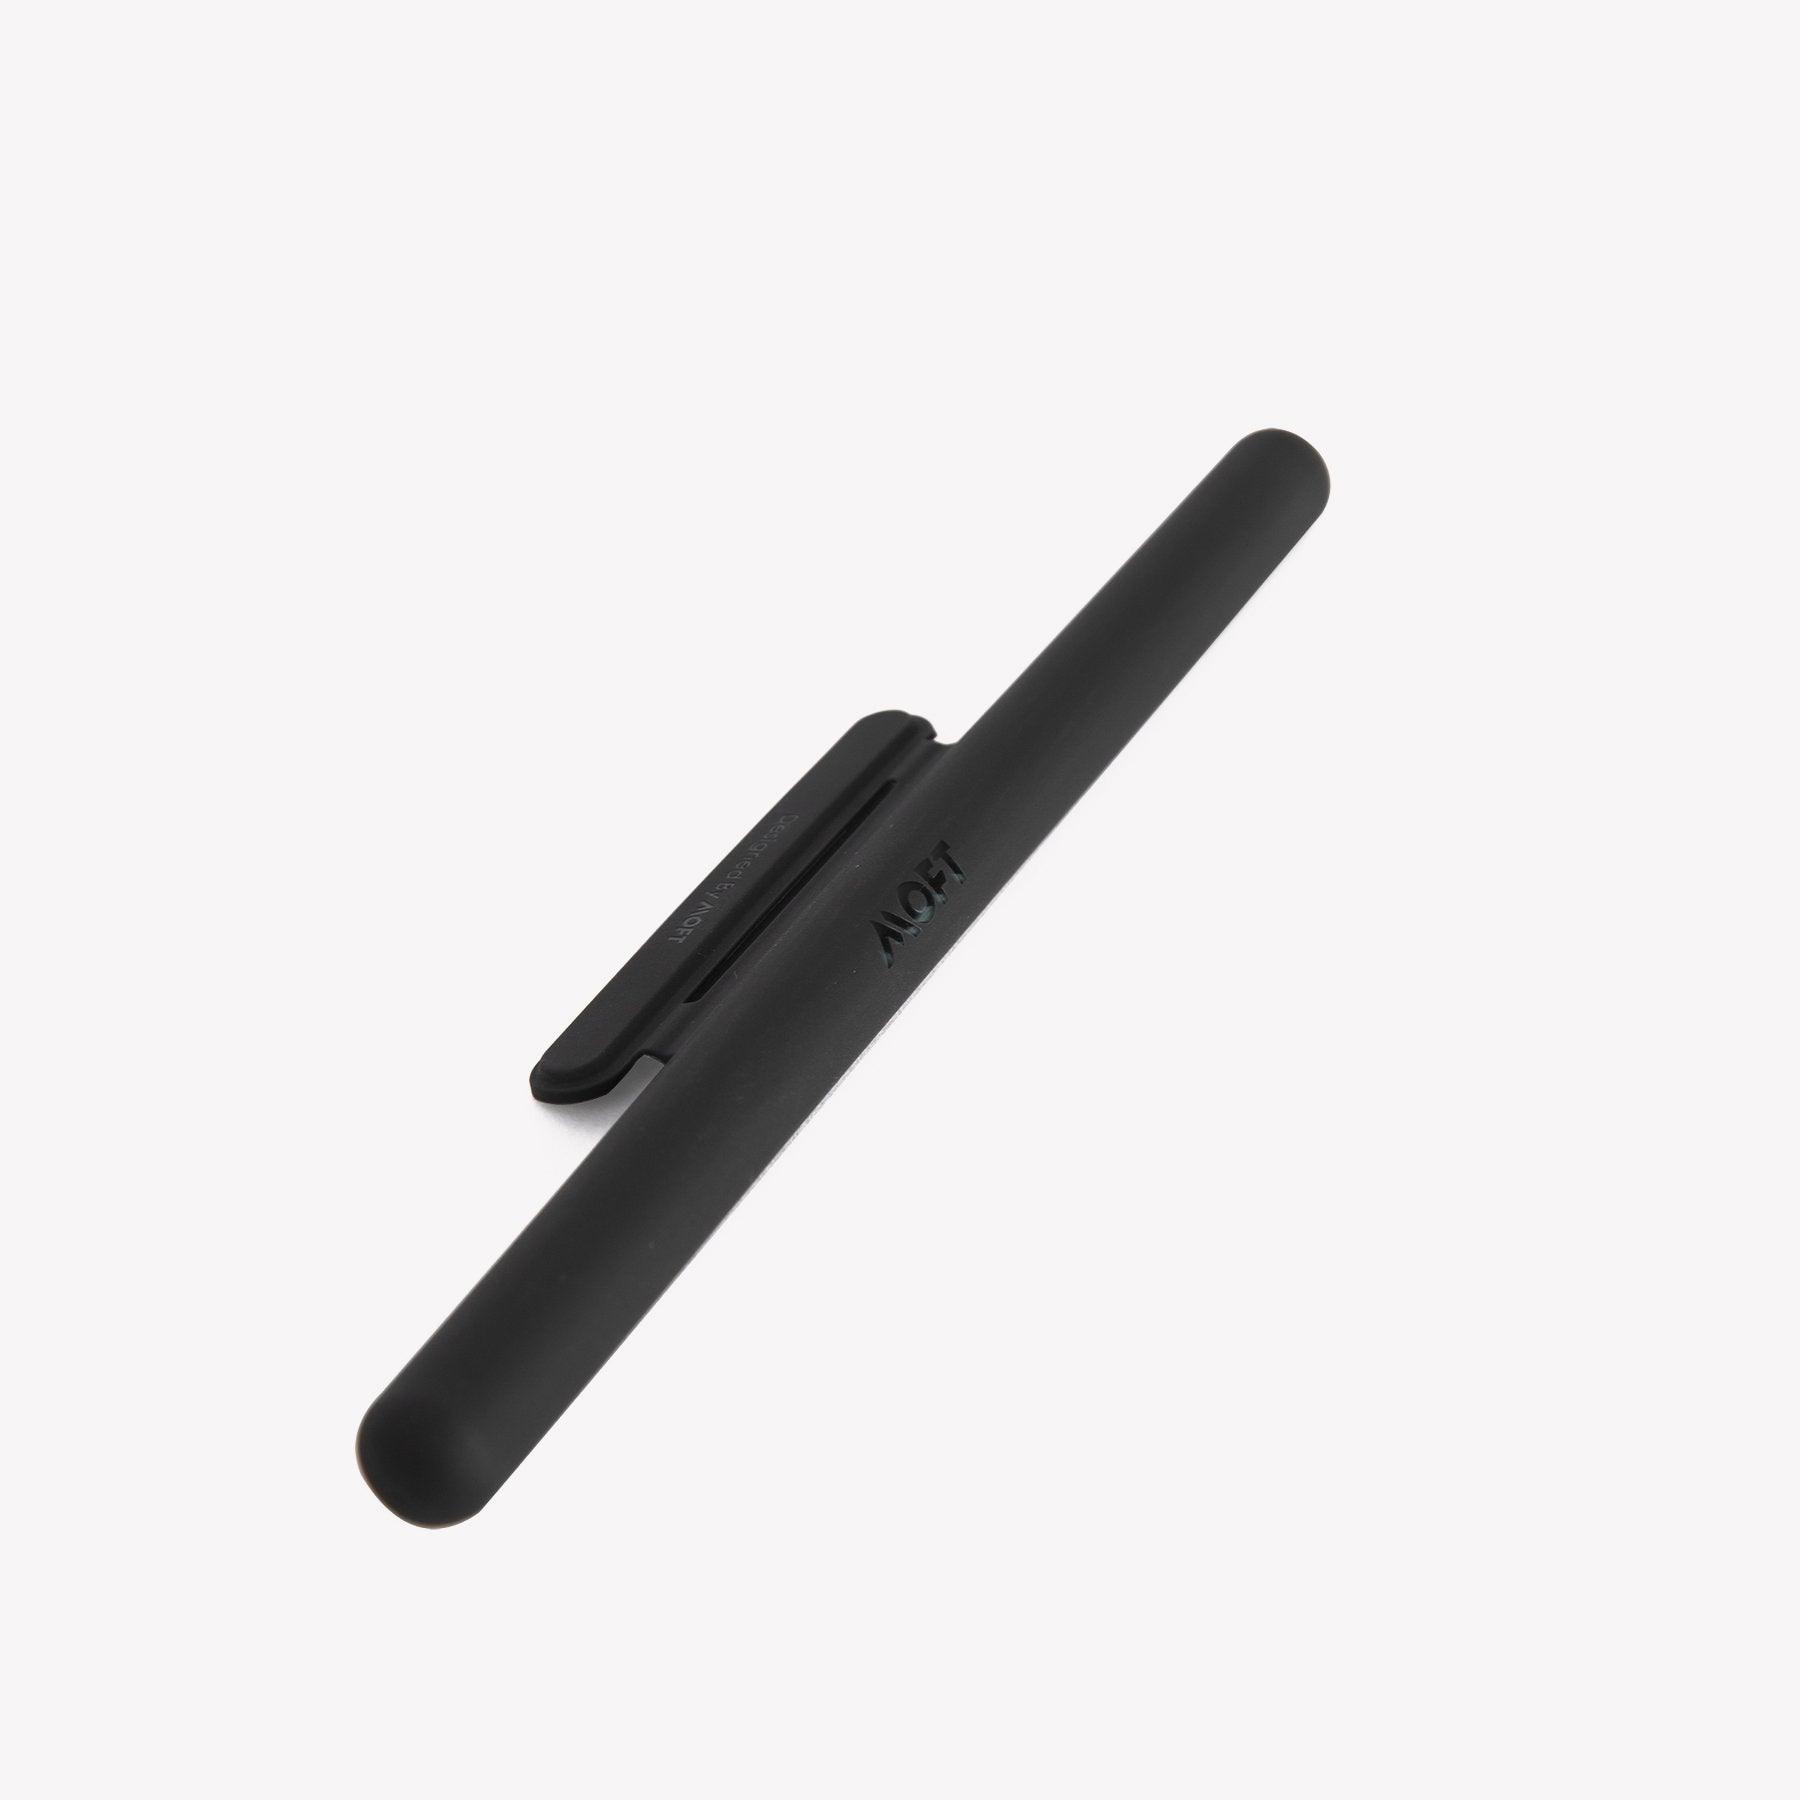 Apple Pen Case - Grab Your Gadget